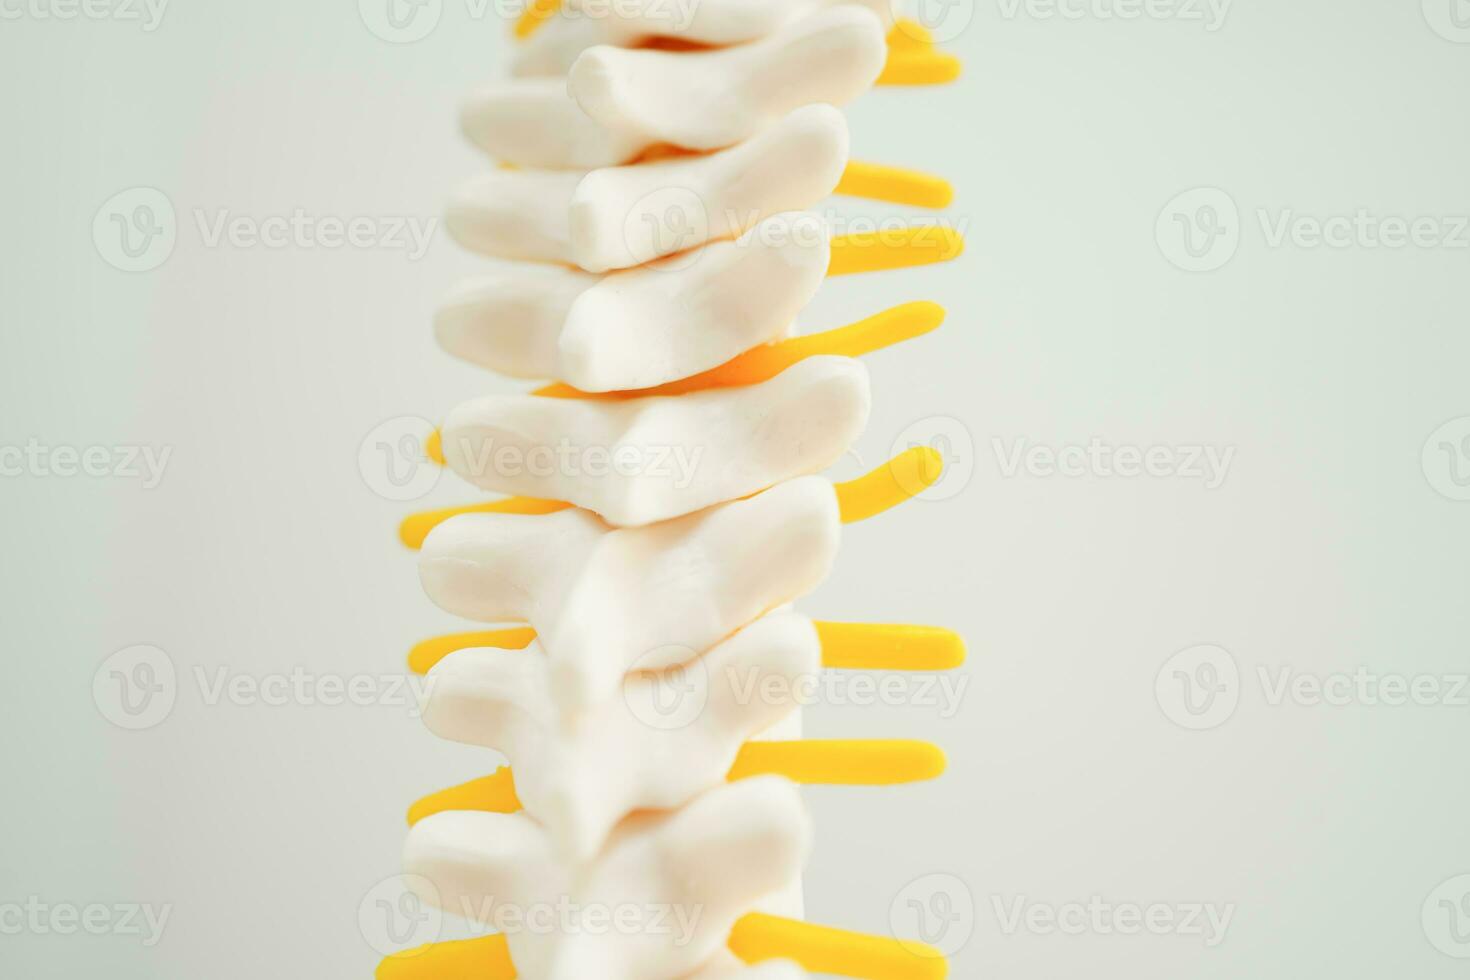 spinal nerf et os, lombaire colonne vertébrale déplacé hernie disque fragment, modèle pour traitement médical dans le orthopédique département. photo